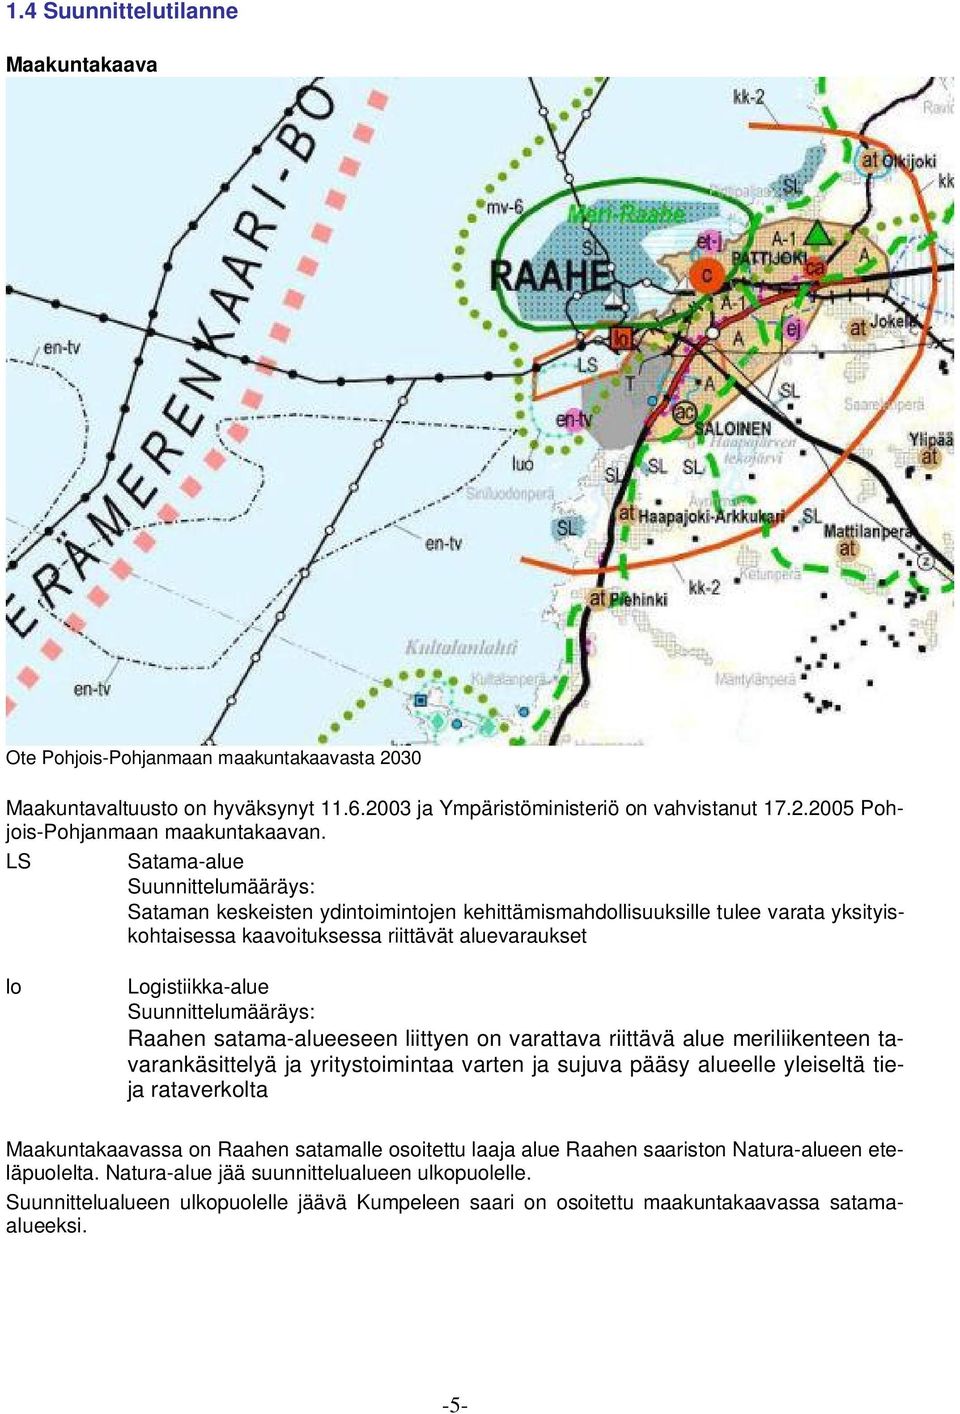 Suunnittelumääräys: Raahen satama-alueeseen liittyen on varattava riittävä alue meriliikenteen tavarankäsittelyä ja yritystoimintaa varten ja sujuva pääsy alueelle yleiseltä tieja rataverkolta